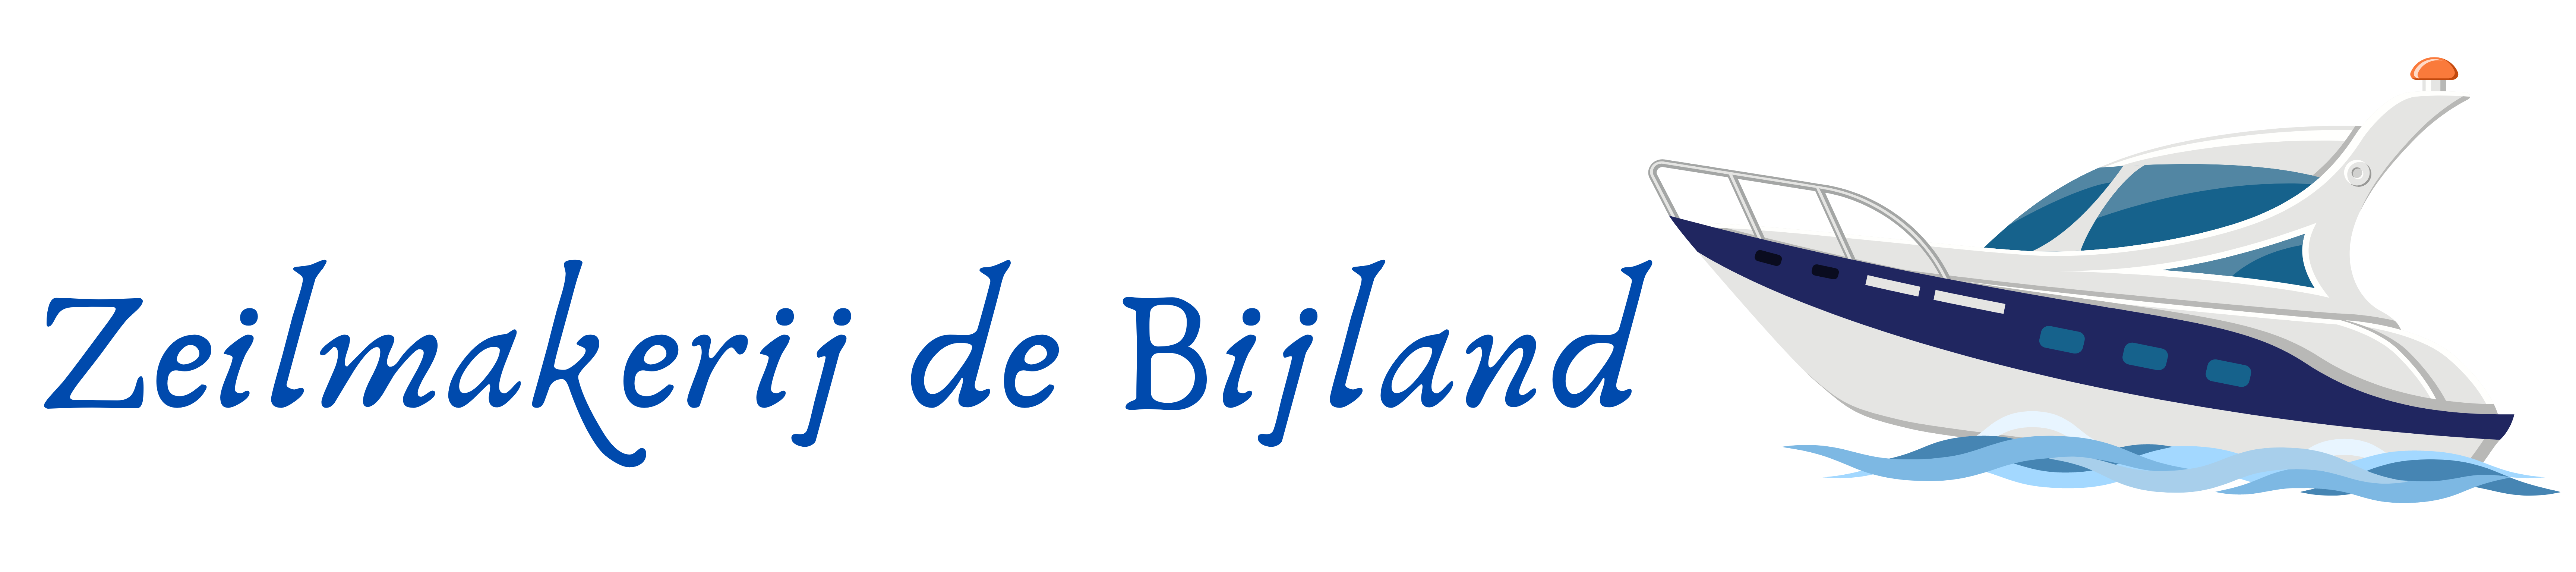 Zeilmakerij de Bijland - 